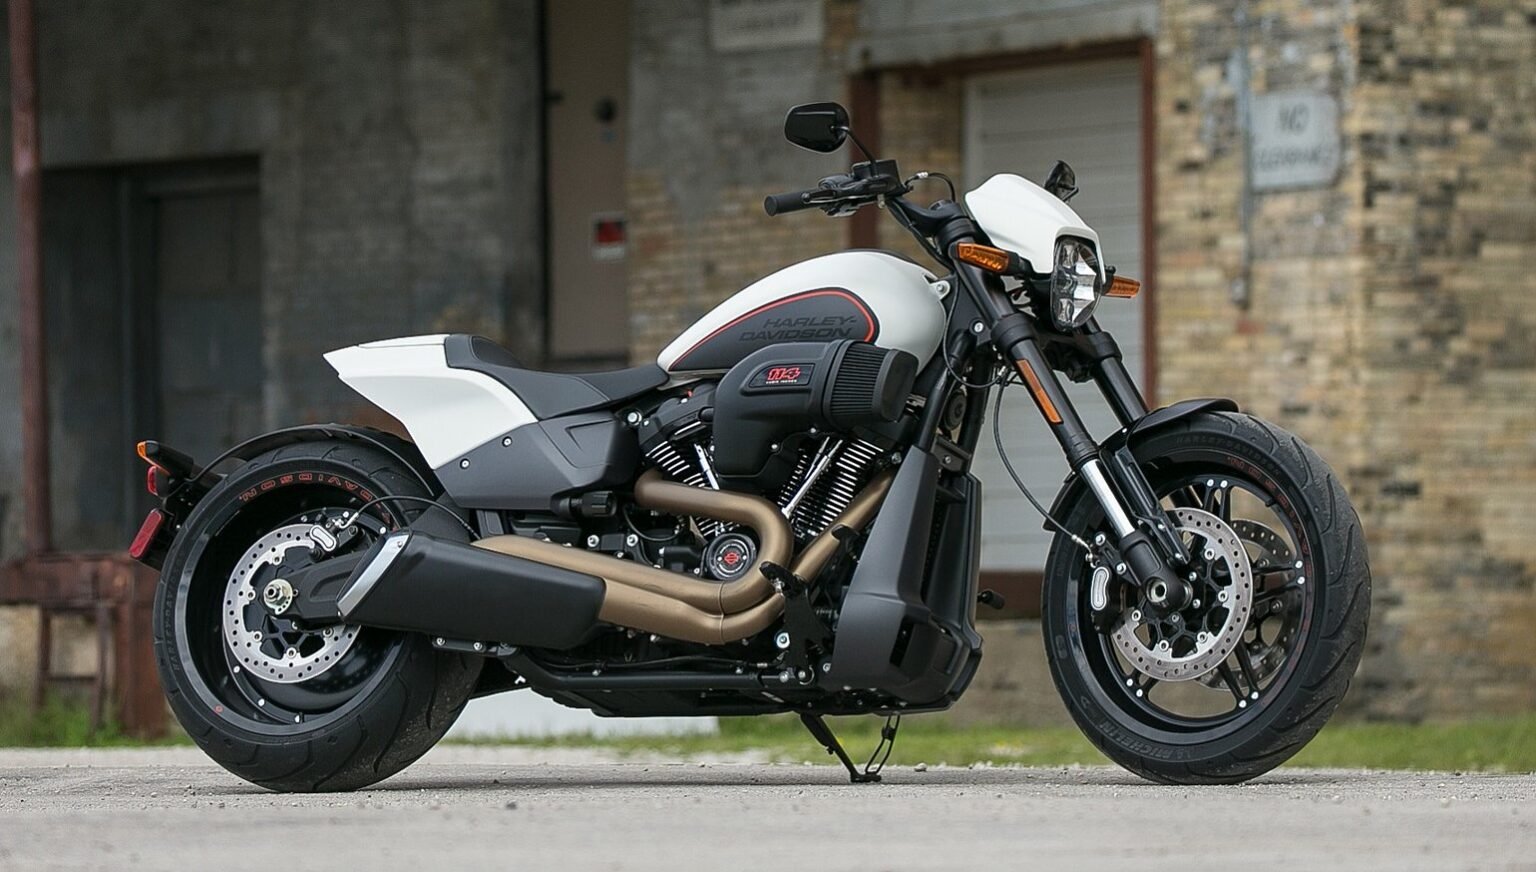 Fastest Harley Davidson Motorcycle. Have You Ever Wondered? Fodsports Blog